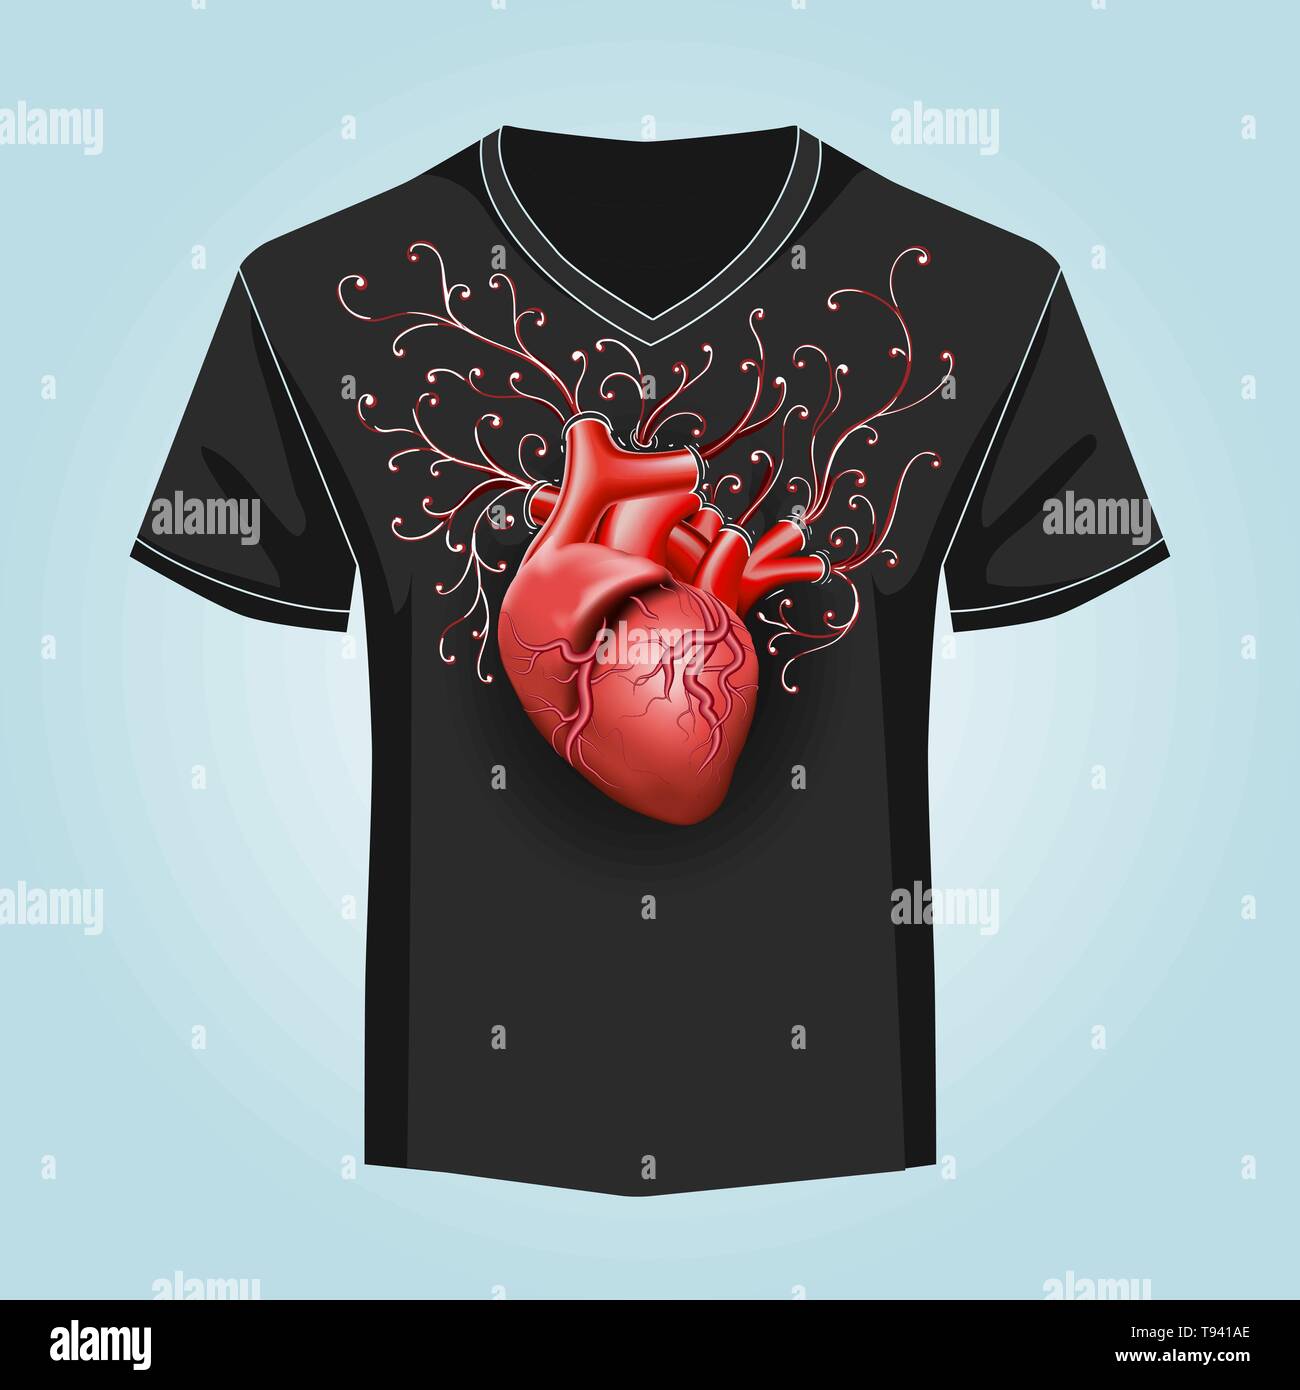 Menschlichen Herzen und Swirl Muster auf schwarzen Hintergrund. T-Shirt drucken. Vector Illustration. Stock Vektor